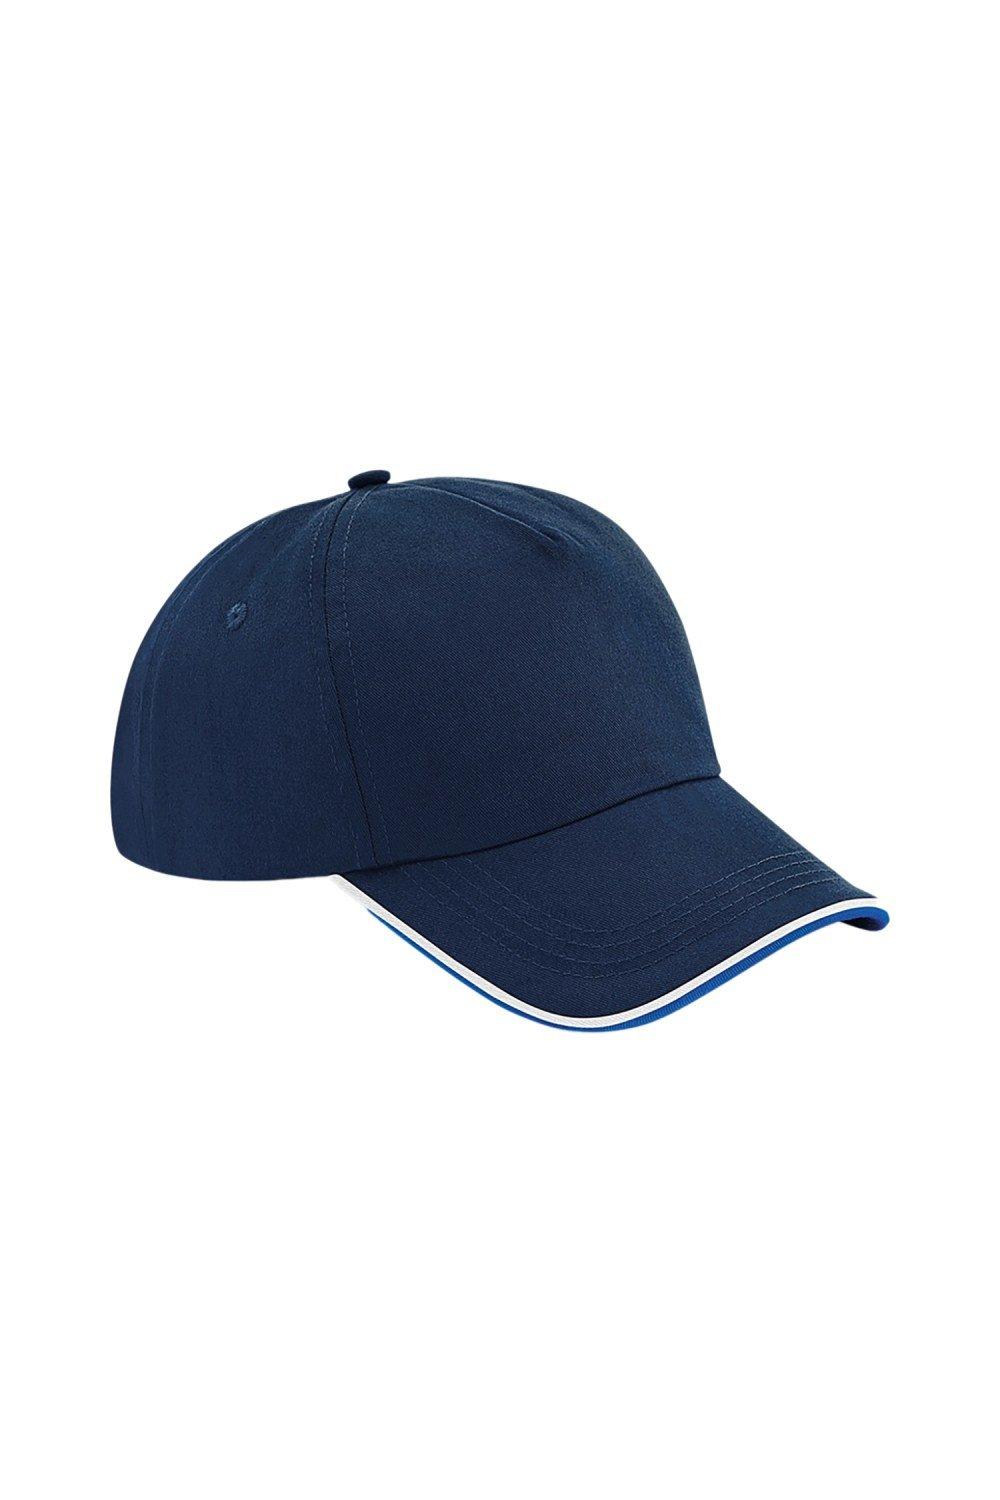 Аутентичная пятипанельная кепка с окантовкой Beechfield, темно-синий